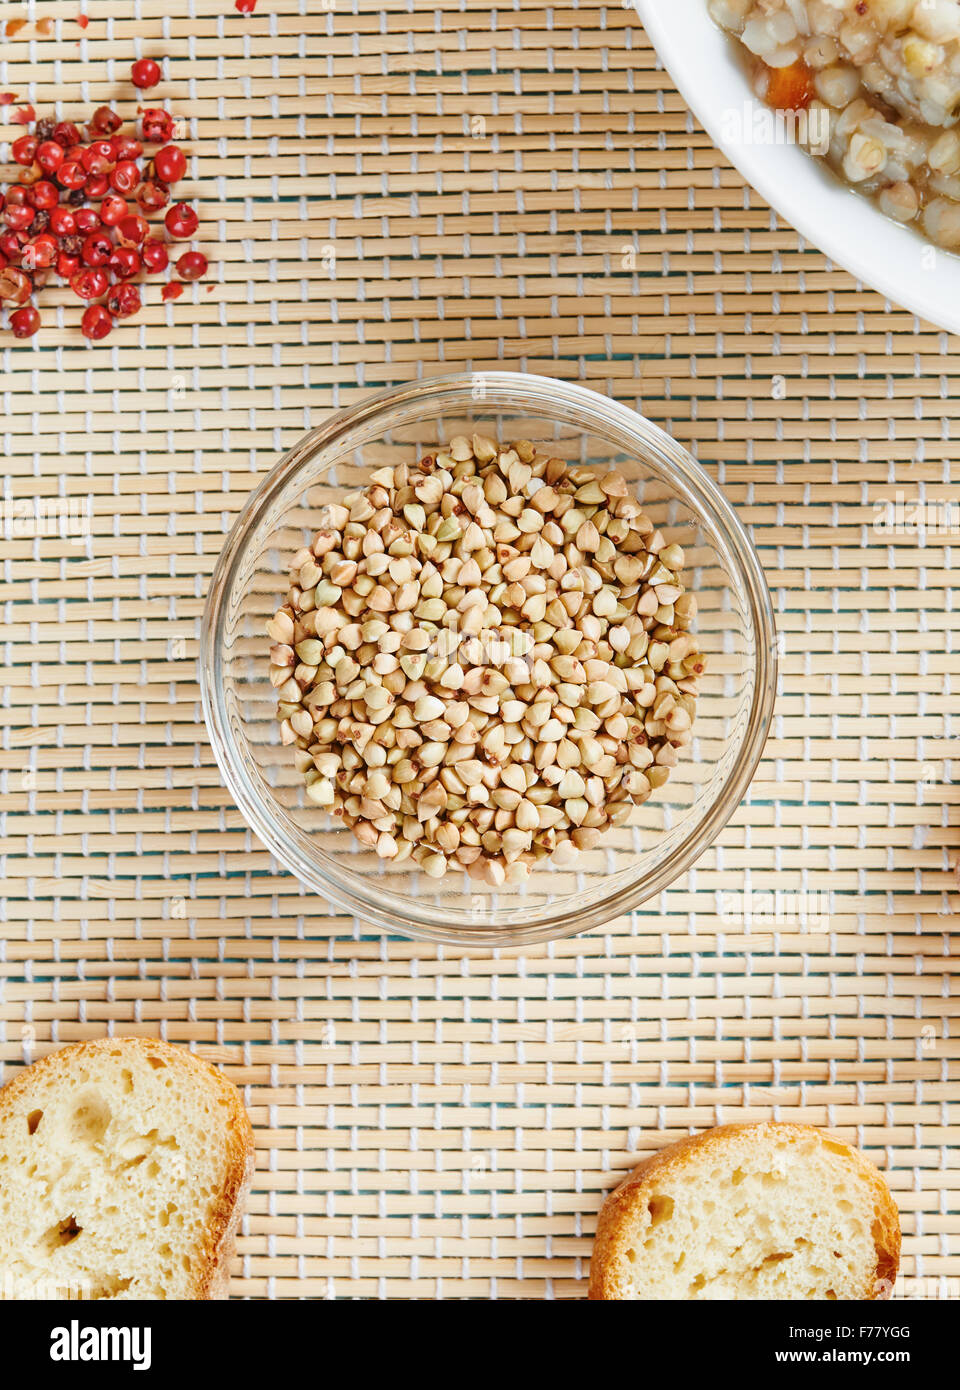 Il grano saraceno in recipiente di vetro - Cibo senza glutine Foto Stock